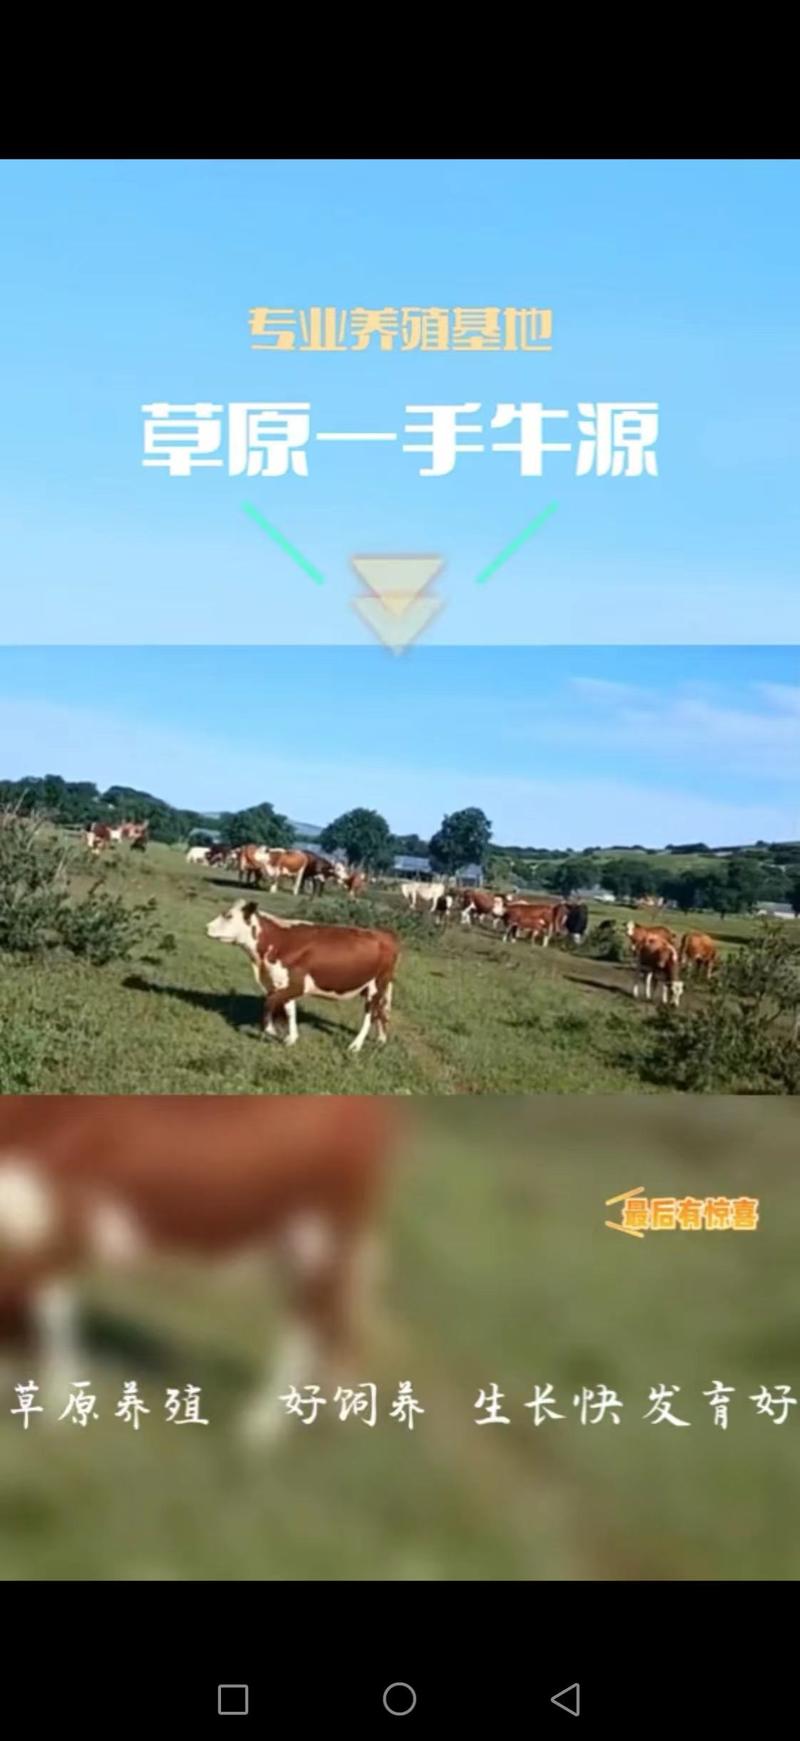 [牛犊]草原一手牛西门塔尔牛牛犊疫苗接种欢迎来电采购